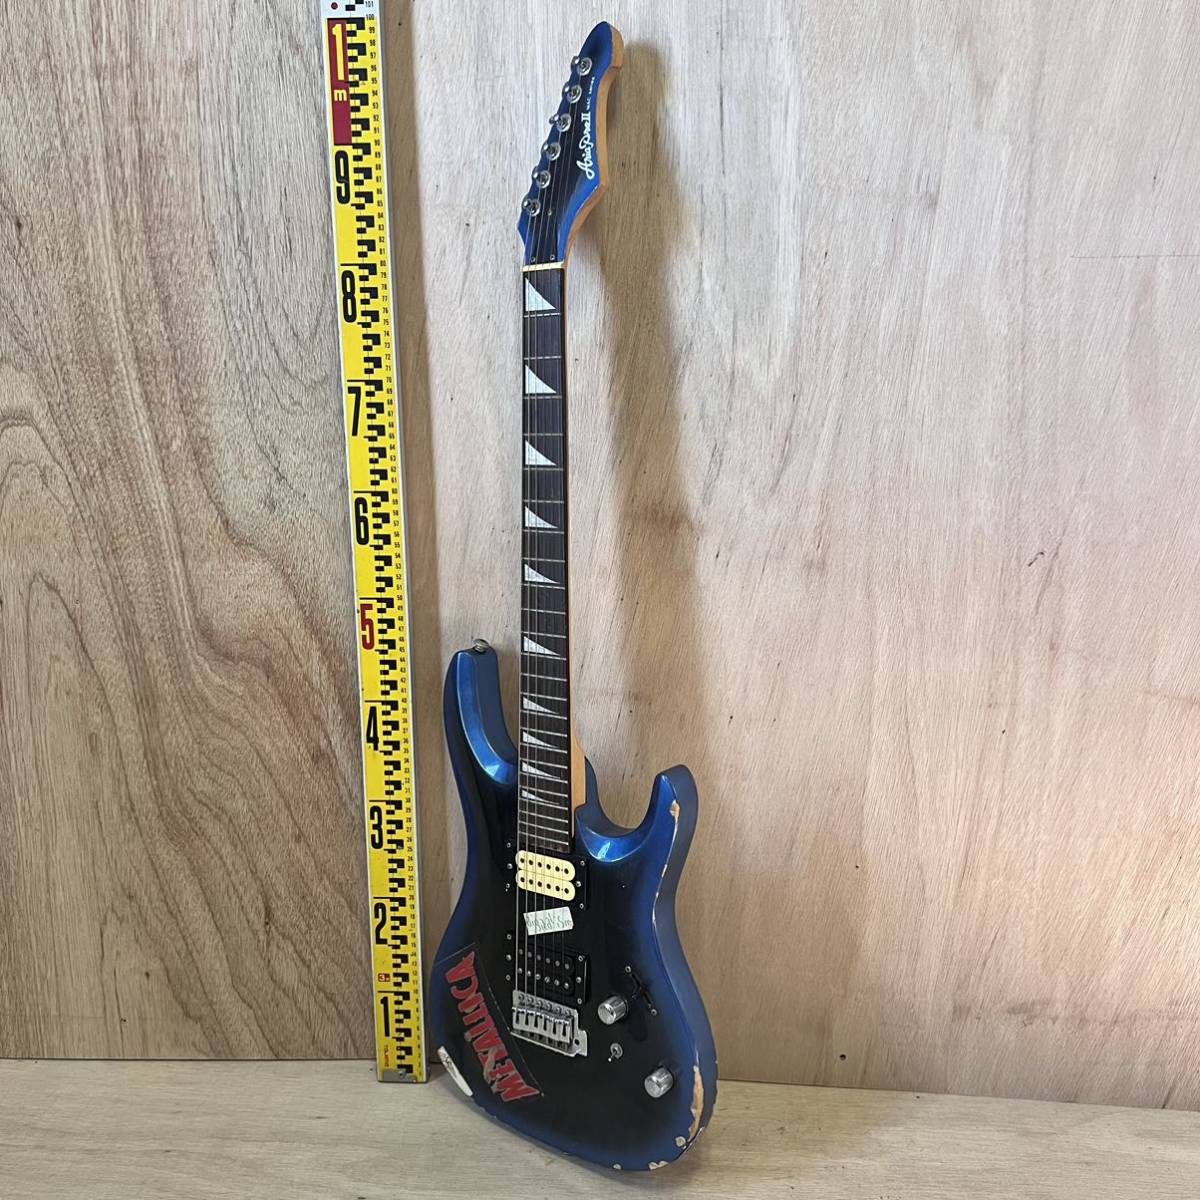 エレキギター AriaproⅡ MACシリーズ アリアプロ2 マックシリーズ 青 ブルー ギター sn11-167_画像1